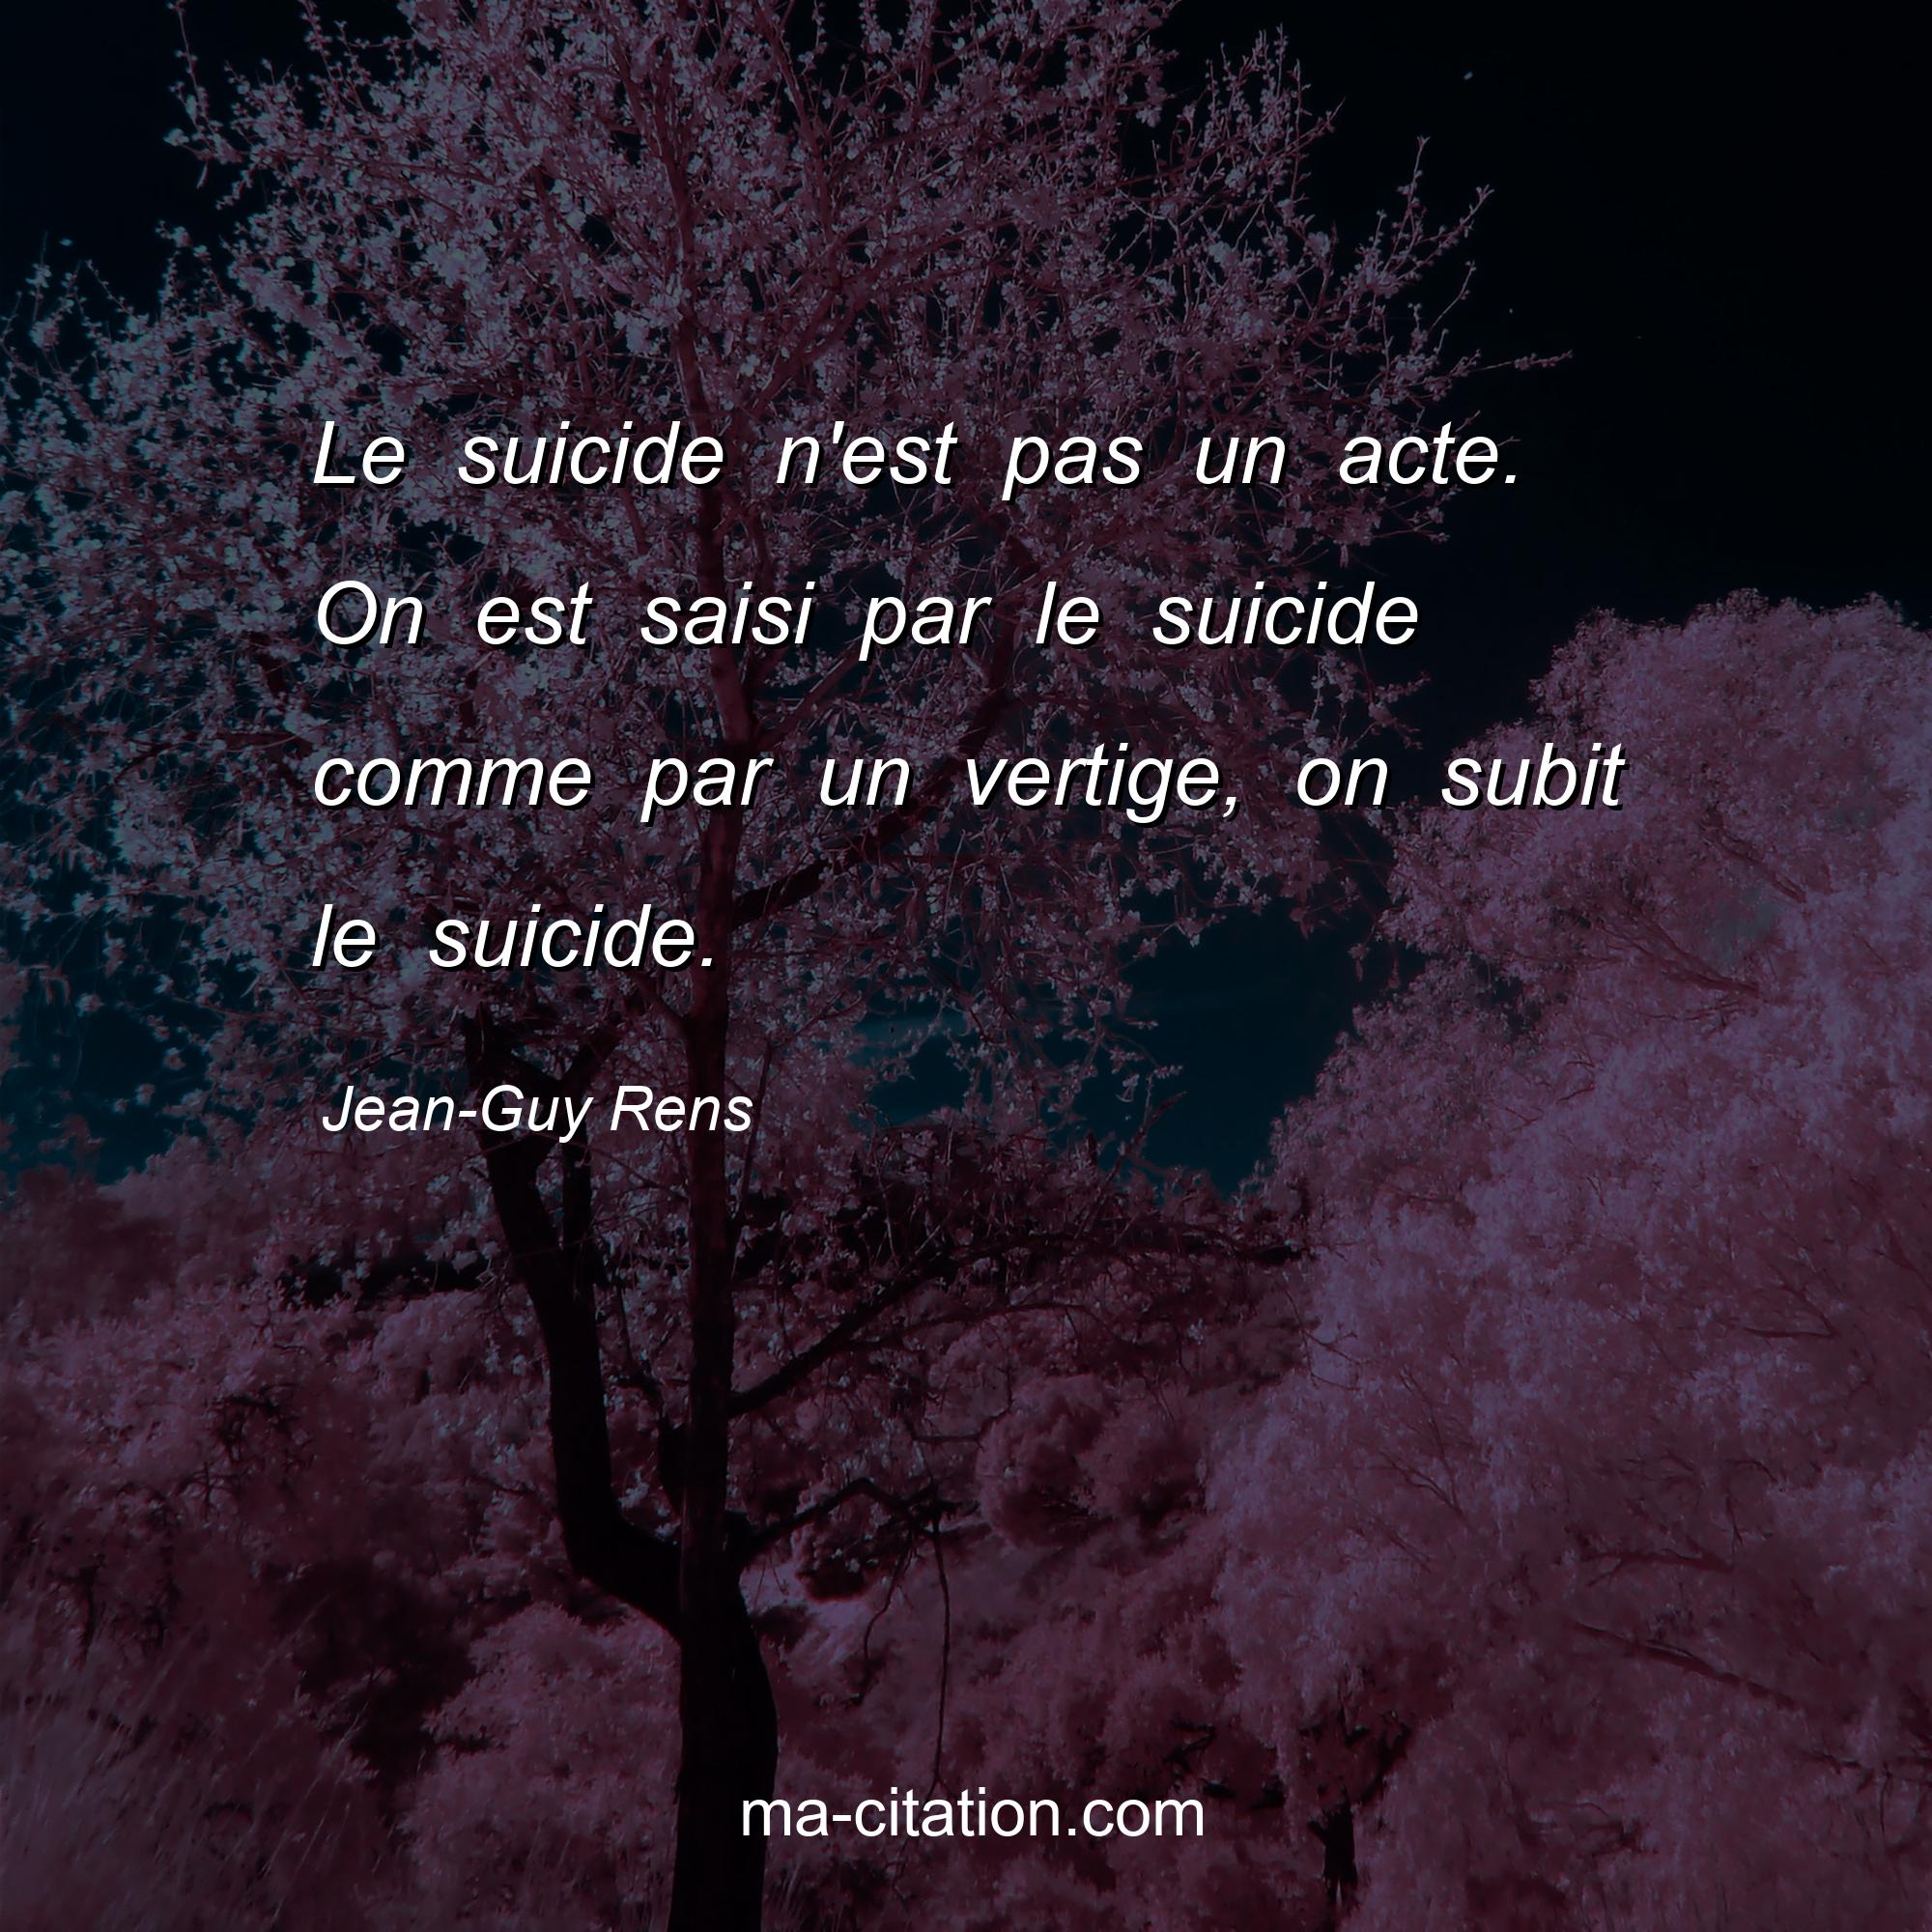 Jean-Guy Rens : Le suicide n'est pas un acte. On est saisi par le suicide comme par un vertige, on subit le suicide.